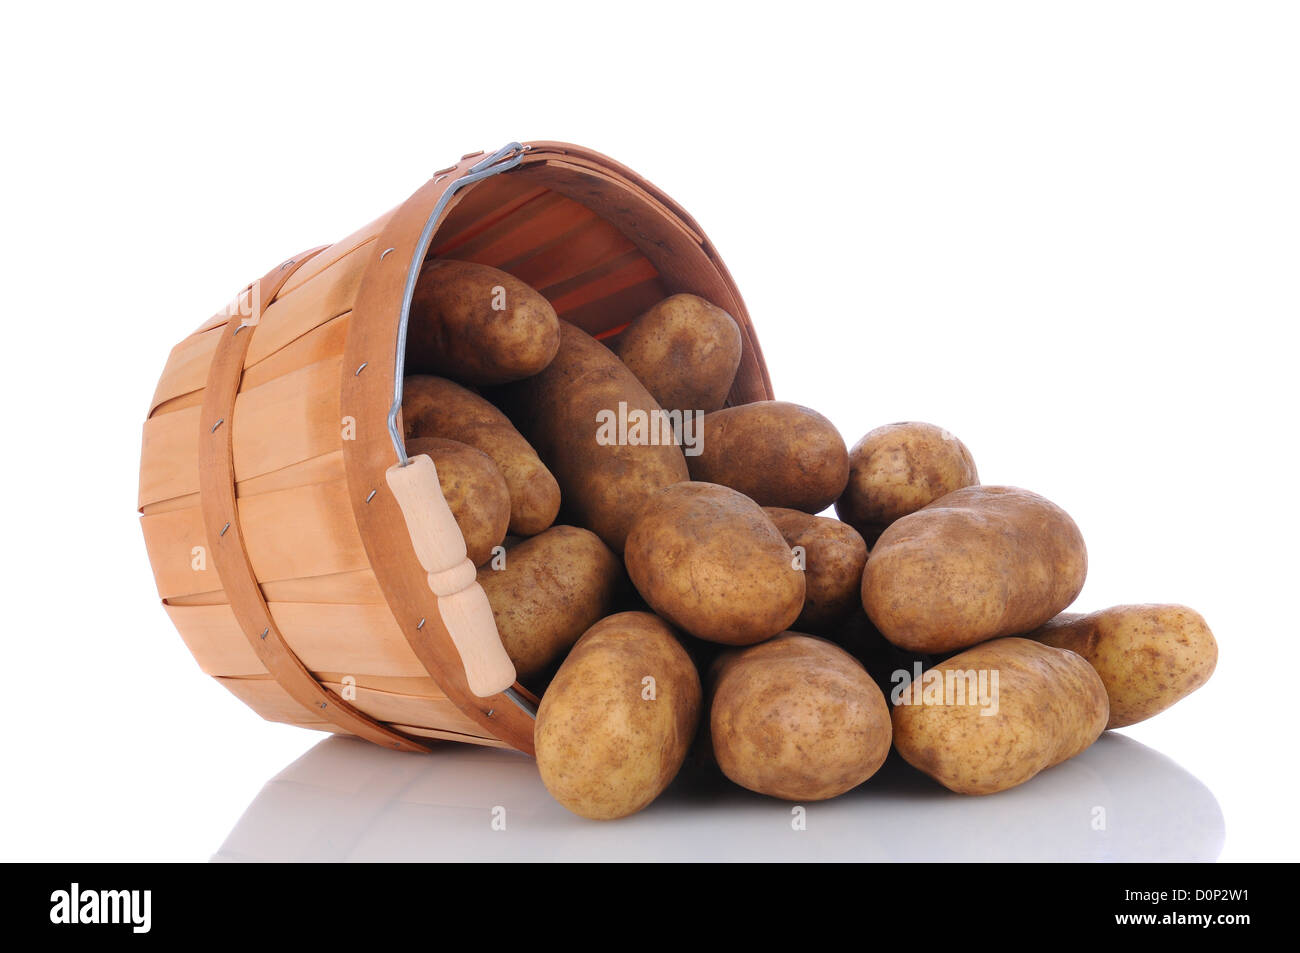 Un panier plein de pommes de terre roussâtres sur le côté sur une surface blanche avec réflexion. Format horizontal. Banque D'Images